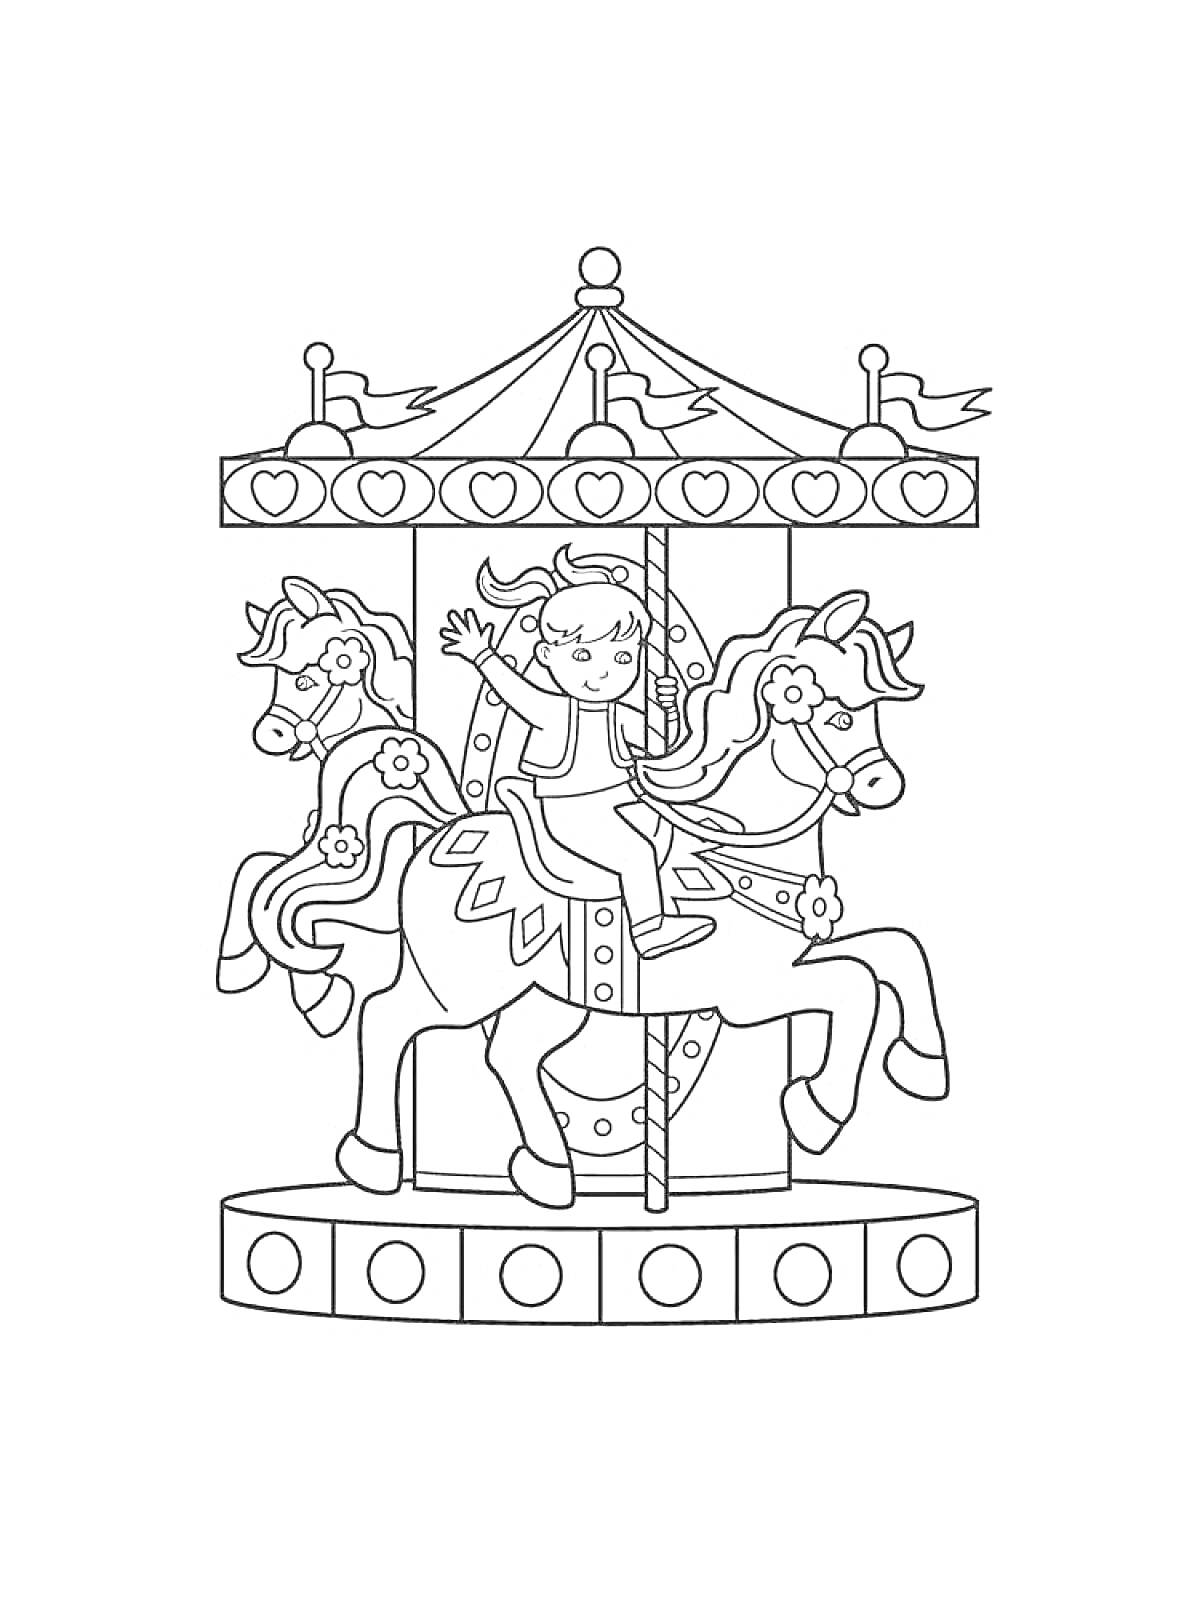 Раскраска Карусель с тремя лошадками и мальчиком